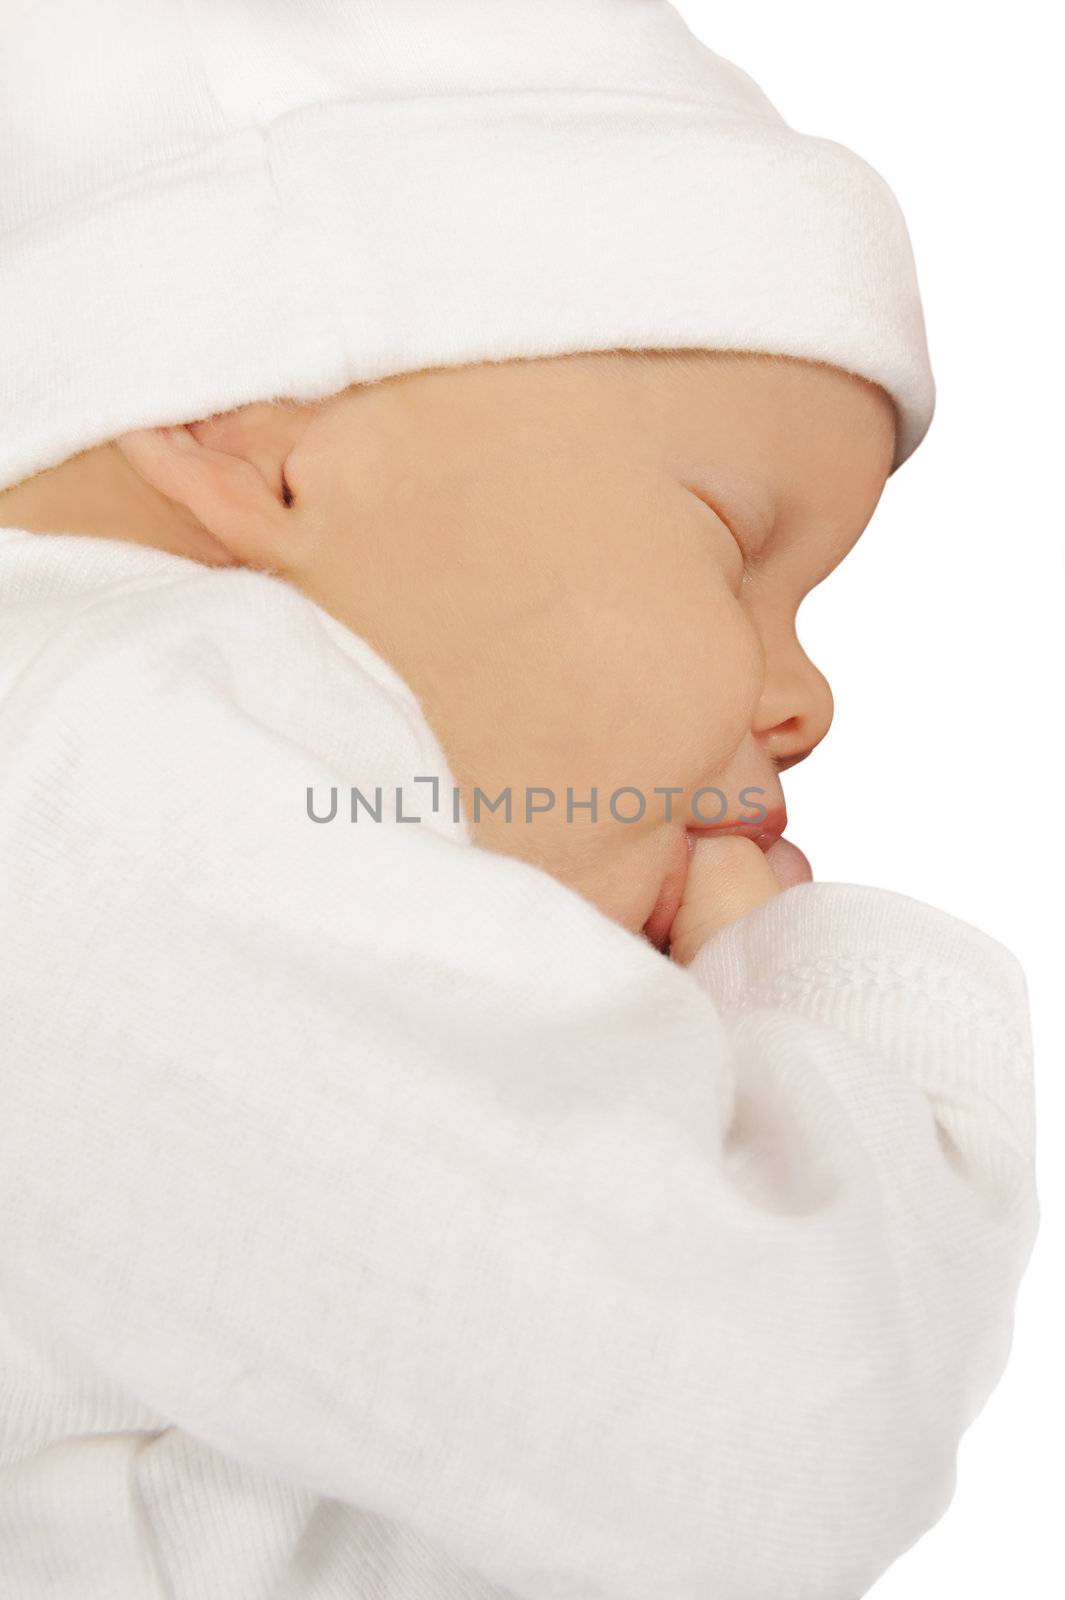 Newborn baby sucking on her thumb on white